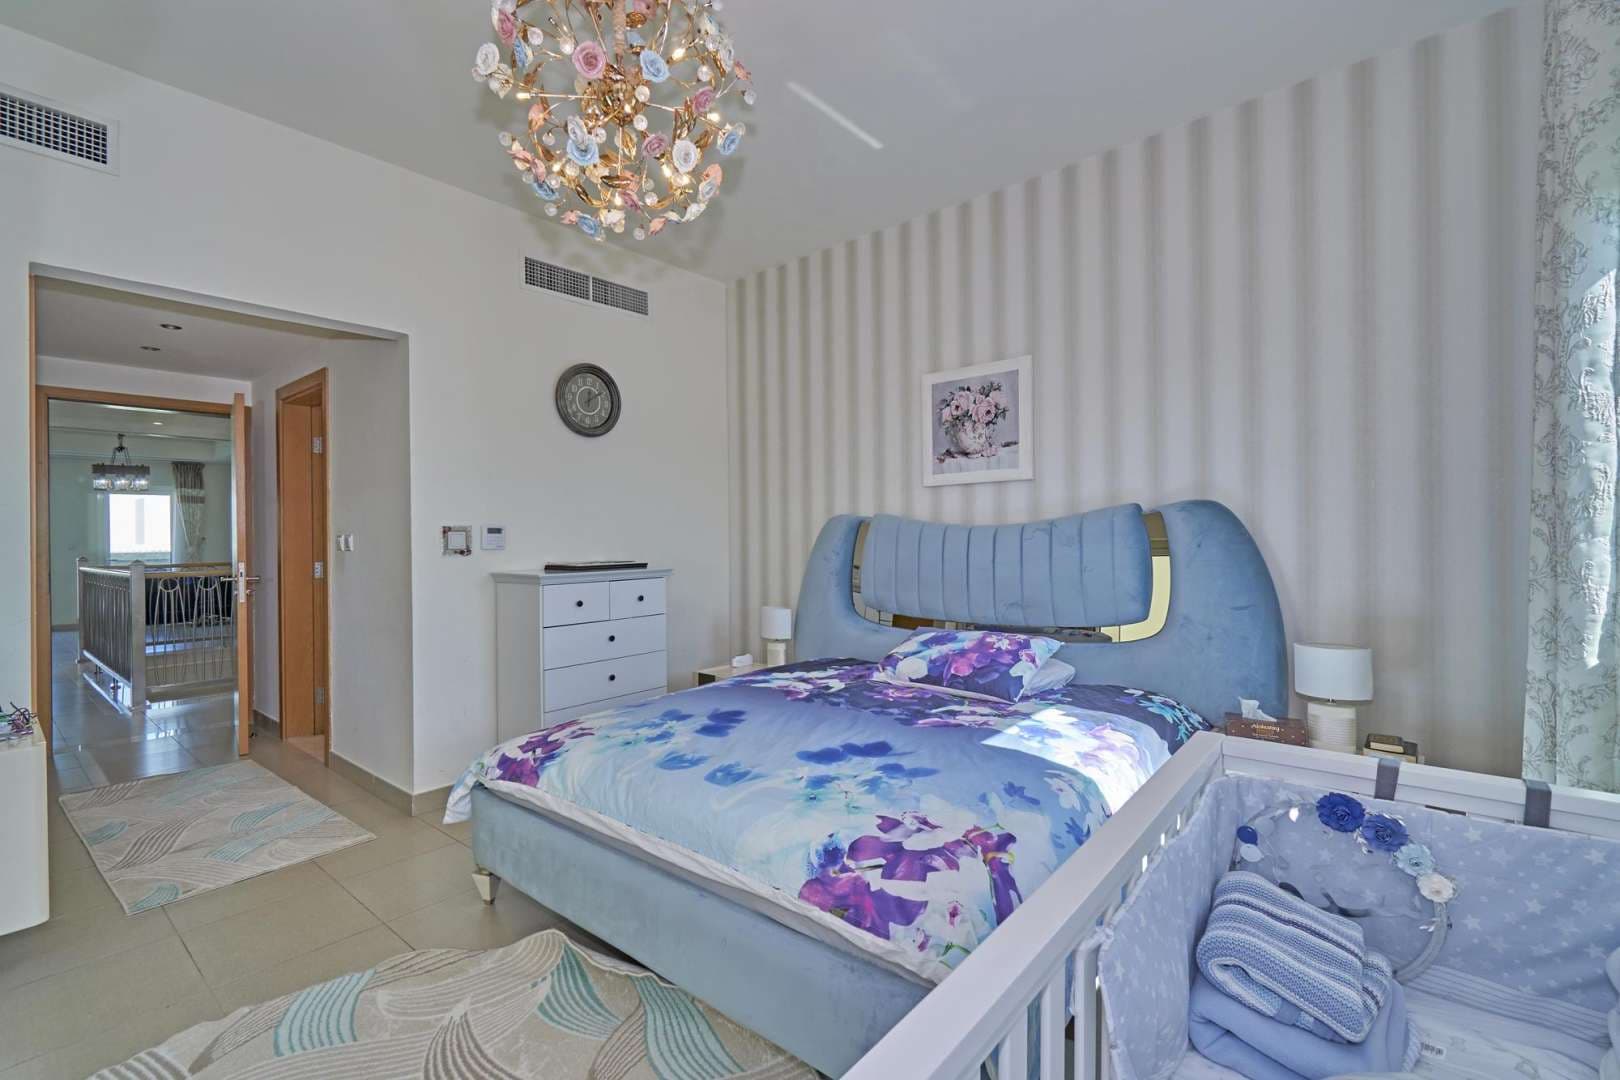  Bedroom Townhouse For Rent Quortaj Lp06642 1b925eb68e007e00.jpg